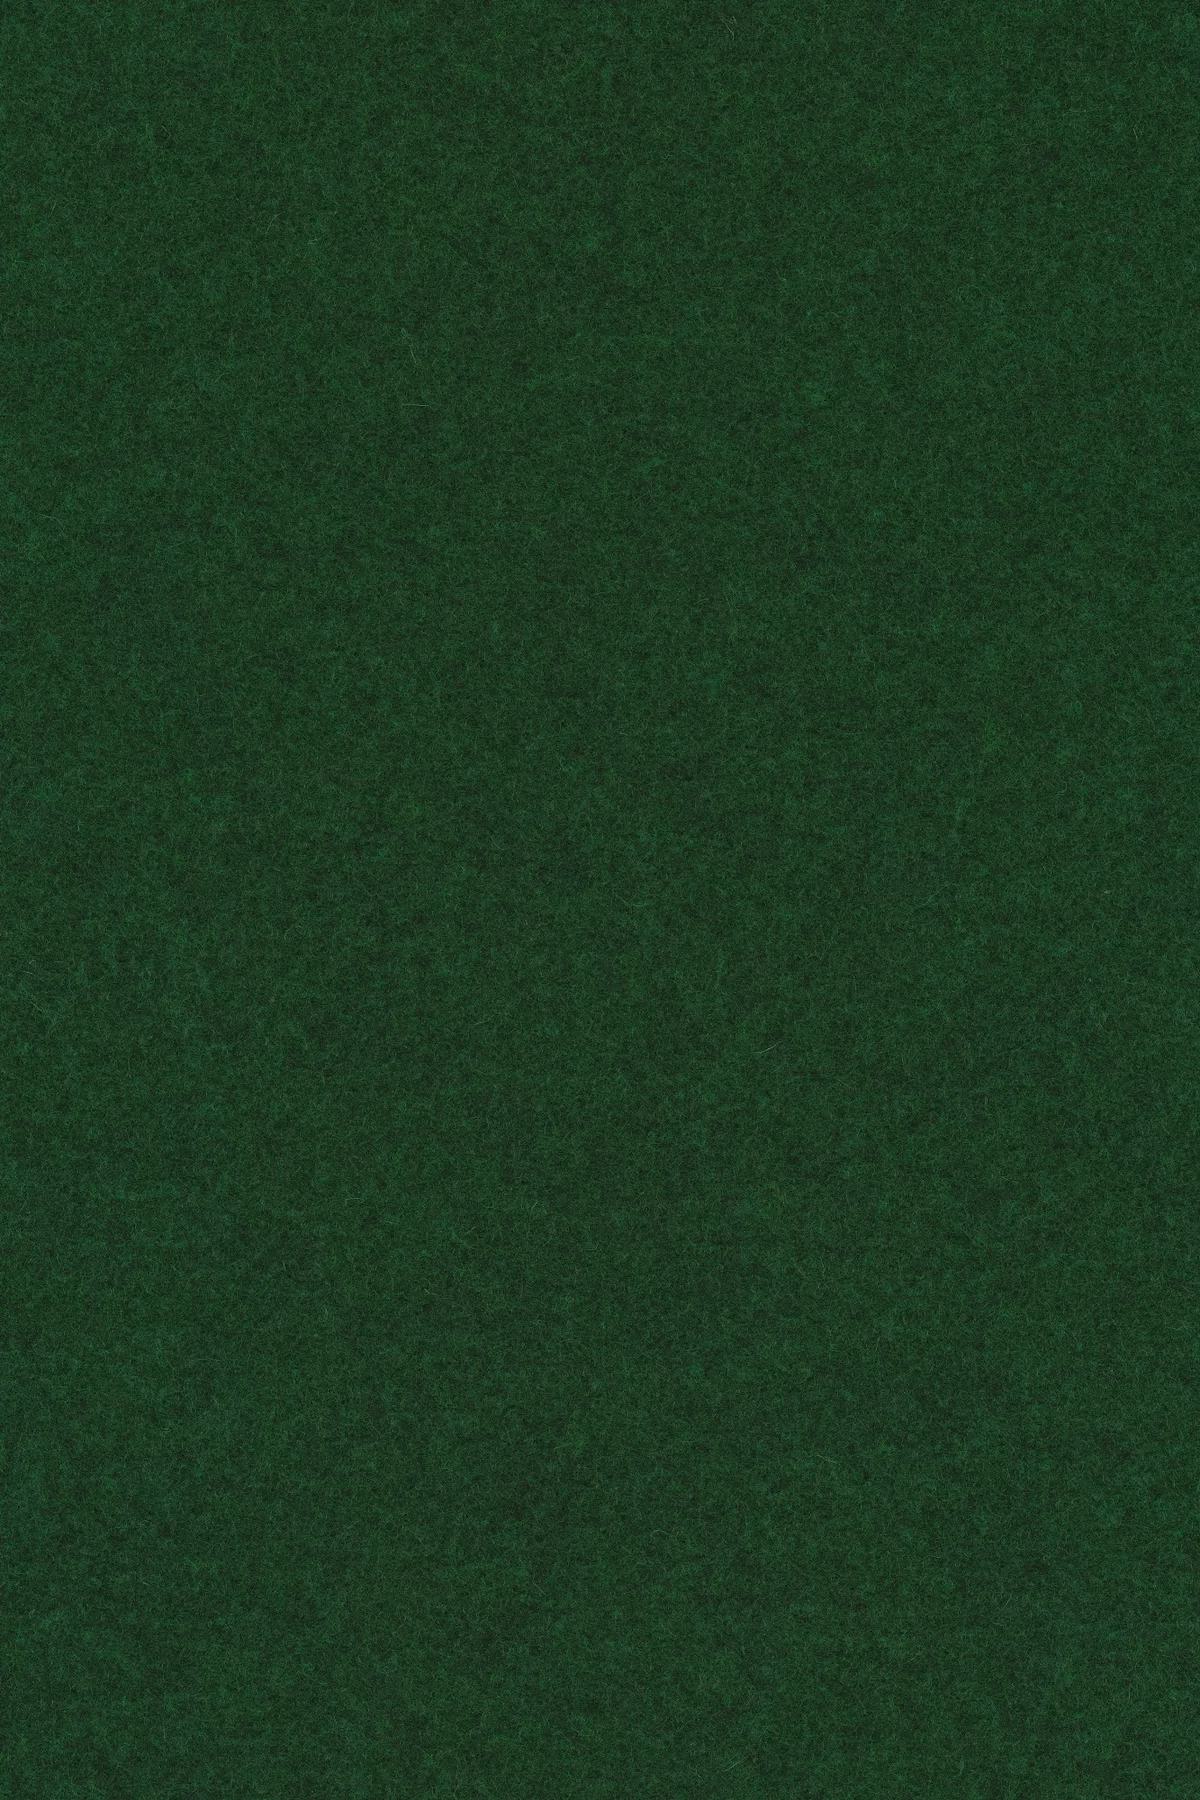 Fabric sample Divina Melange 3 977 green